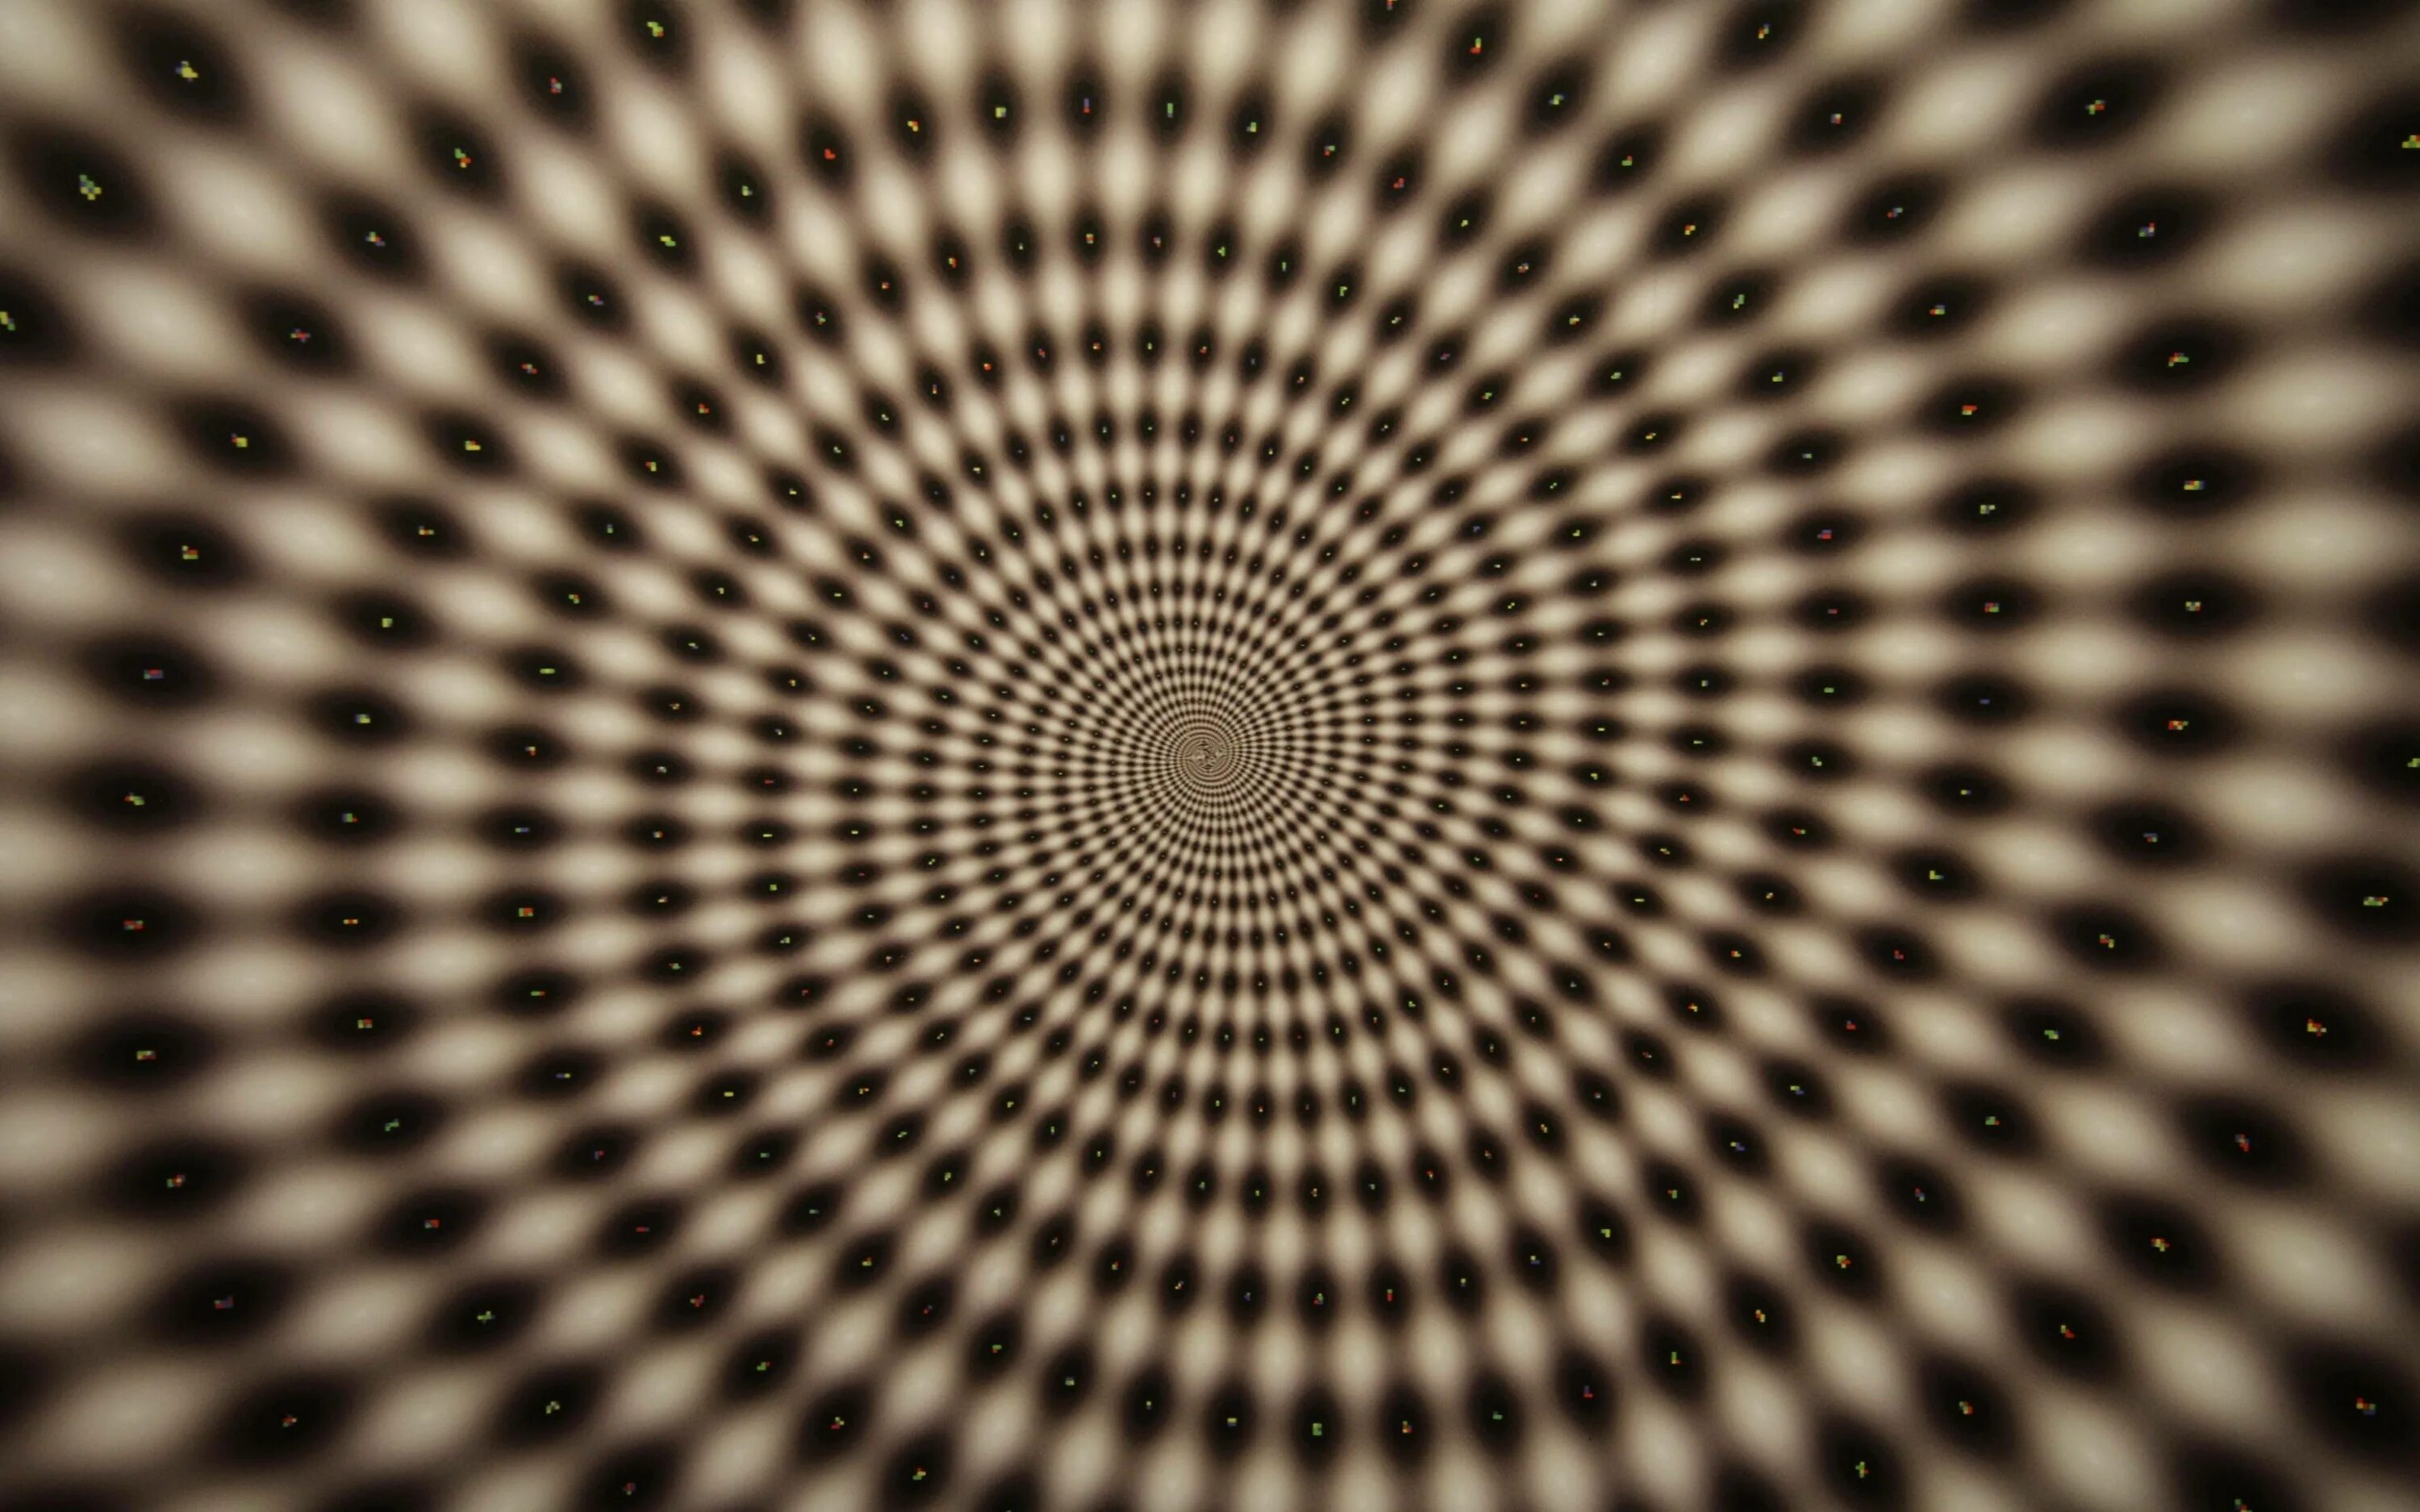 Digital hallucination or3o. Иллюзия. Иллюзия движения. Зрительные иллюзии. Визуальные иллюзии.